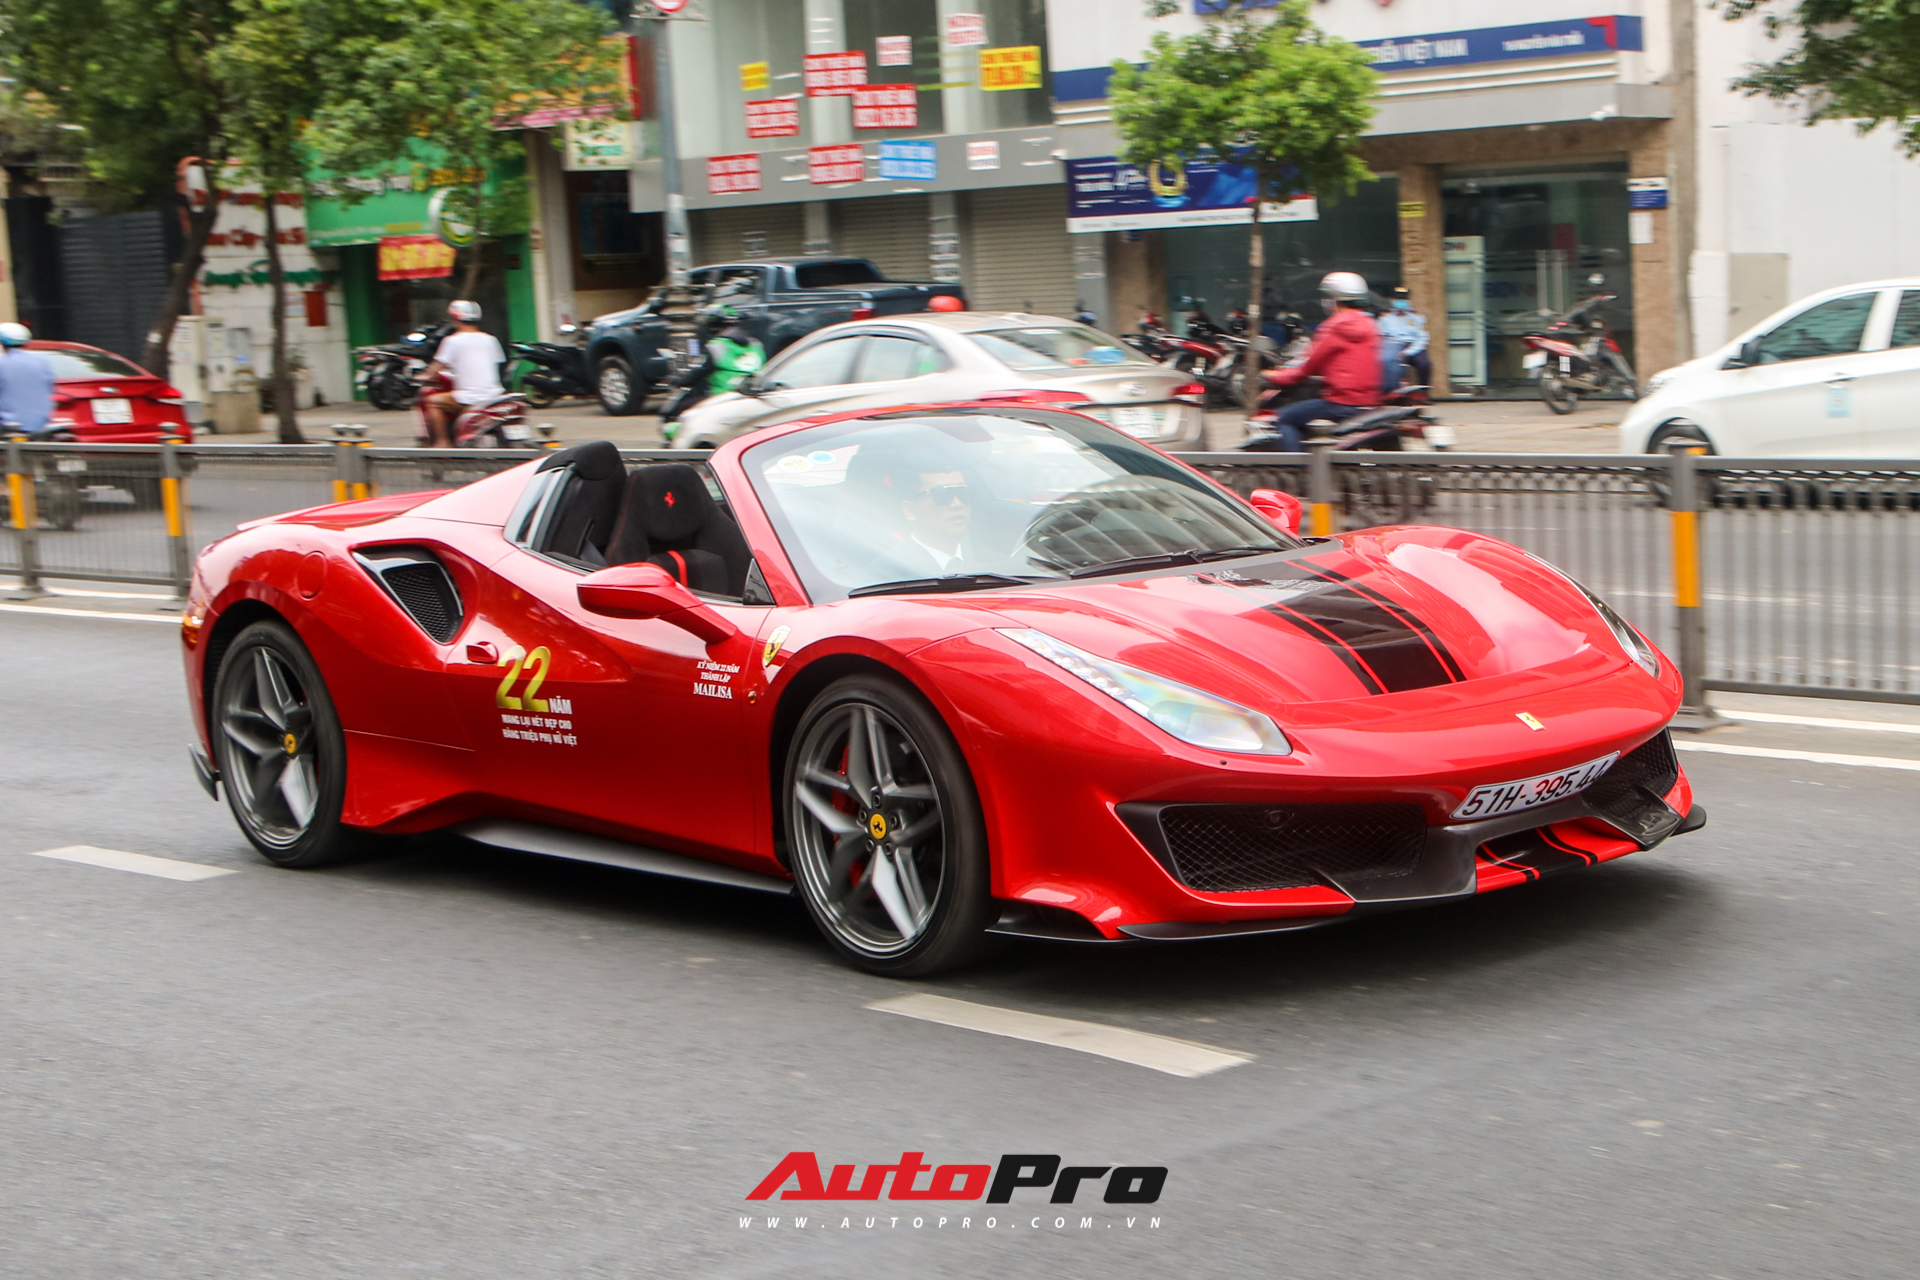 Hoàng Kim Khánh lần đầu cầm lái, khoe khả năng mở mui của Ferrari 488 Pista Spider trên đường phố Việt - Ảnh 2.